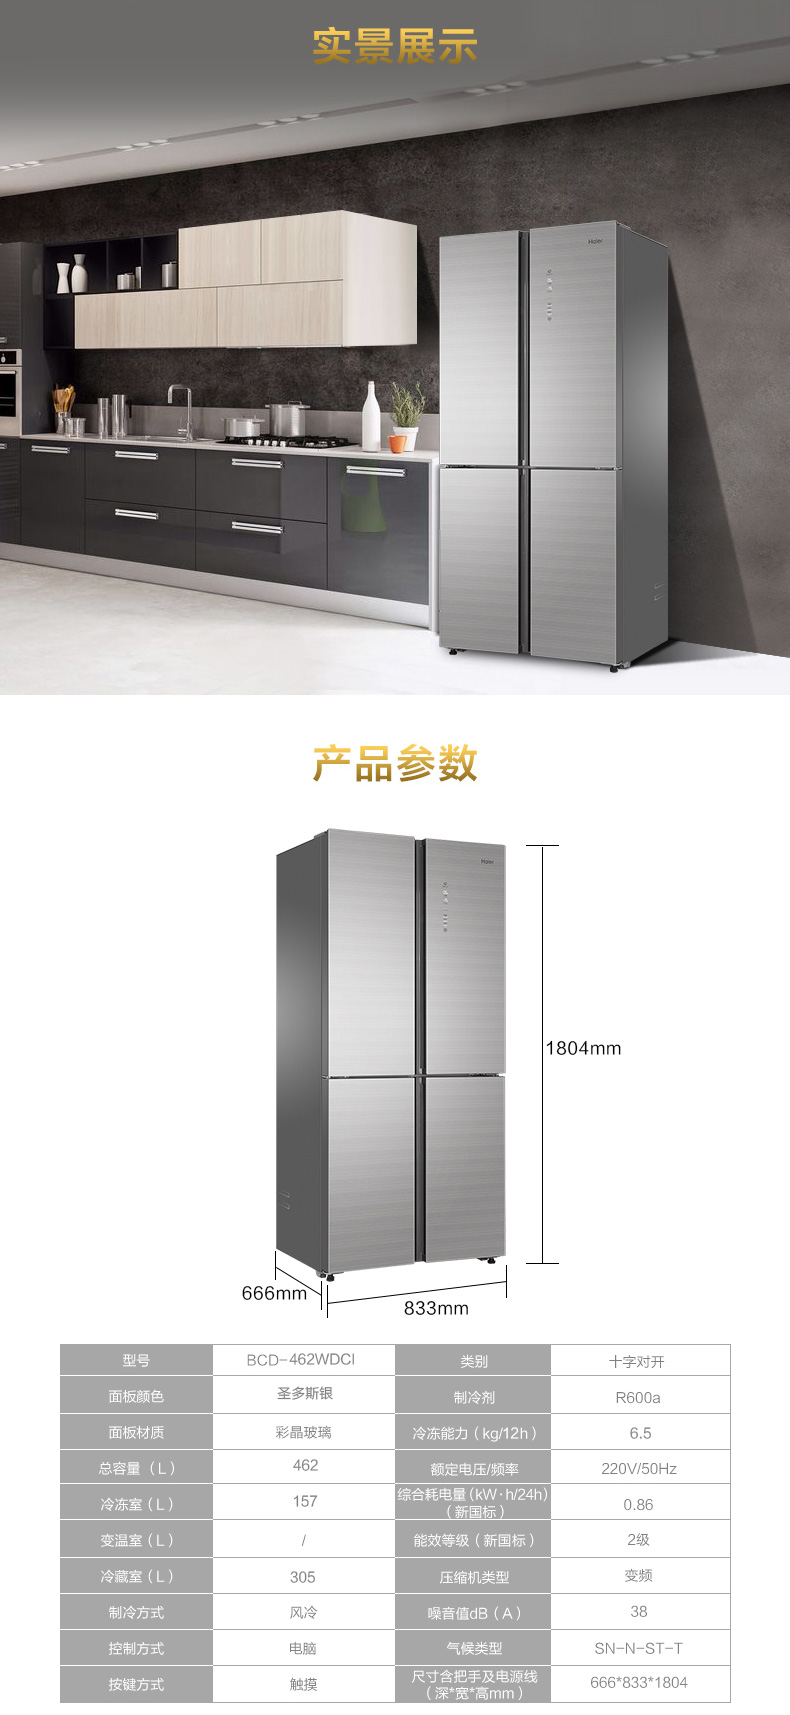 【苏宁专供】海尔冰箱BCD-462WDCI